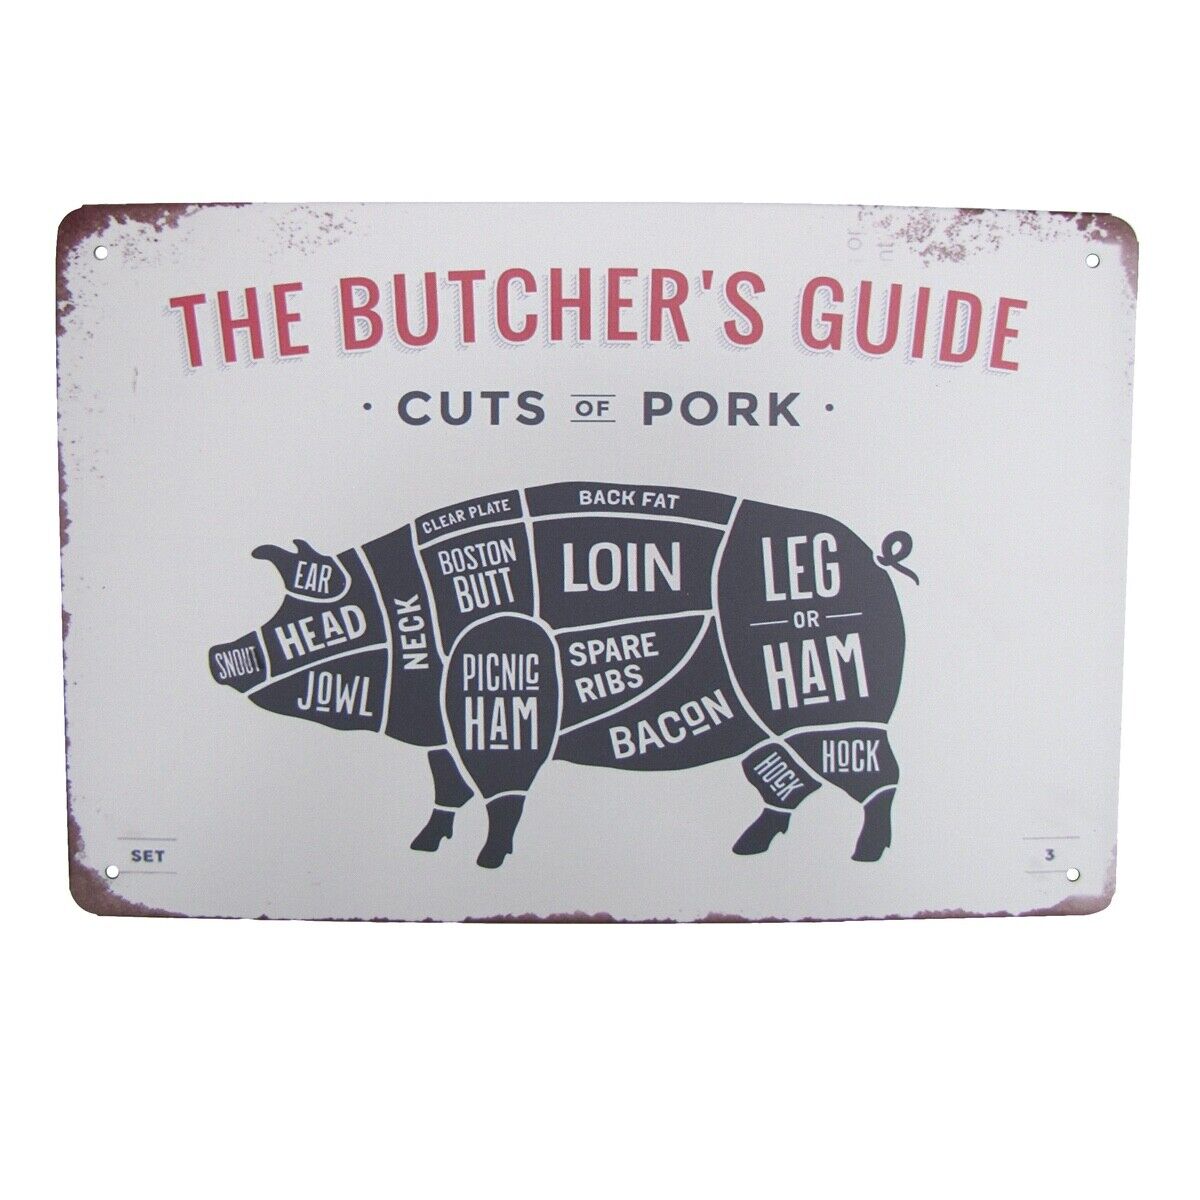 Retro Metal Cuts Pork Butcher Guide Wall Sign Man Cave Bar Pub Restaurant Decor